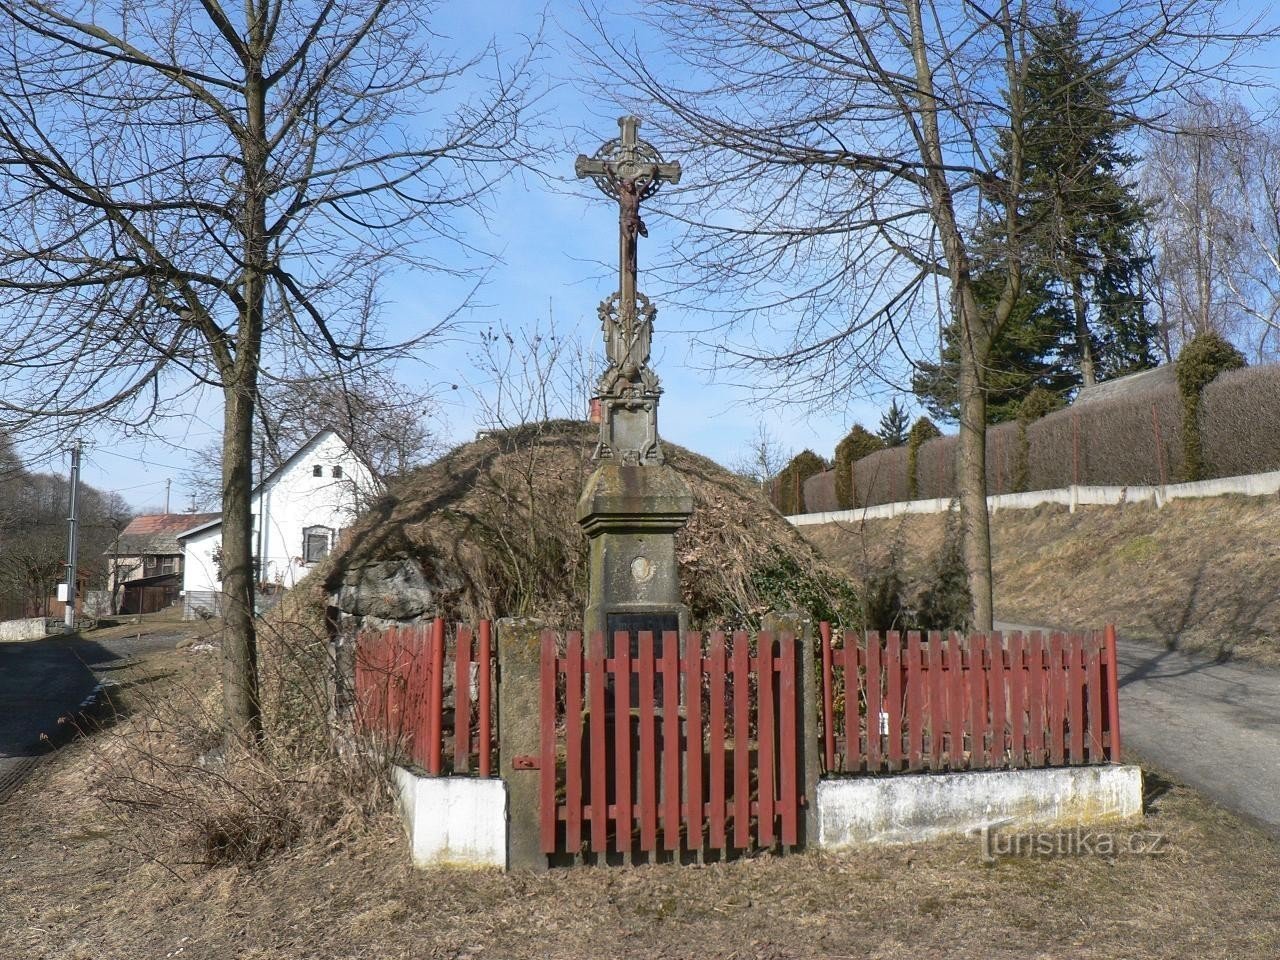 Velenovy, et kors i landsbyen